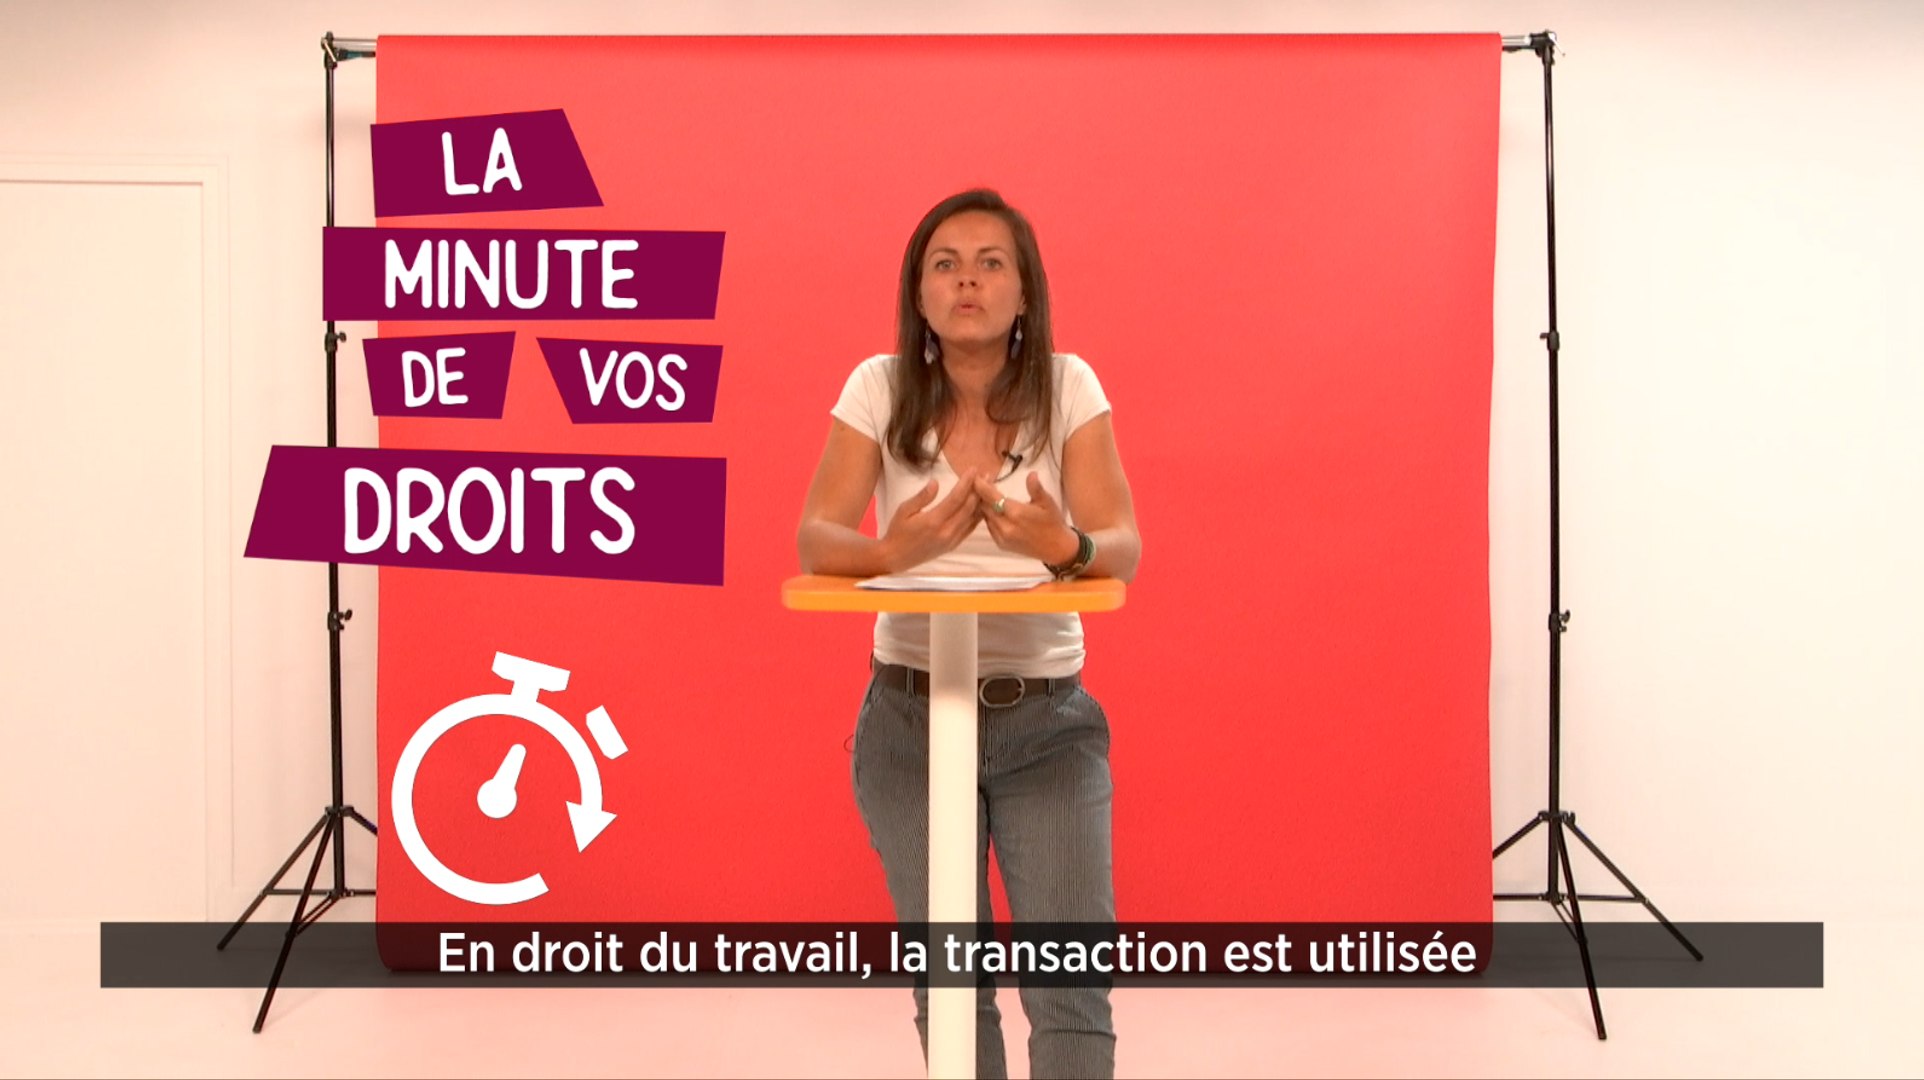 La minute de vos droits - La transaction - Vidéo Dailymotion